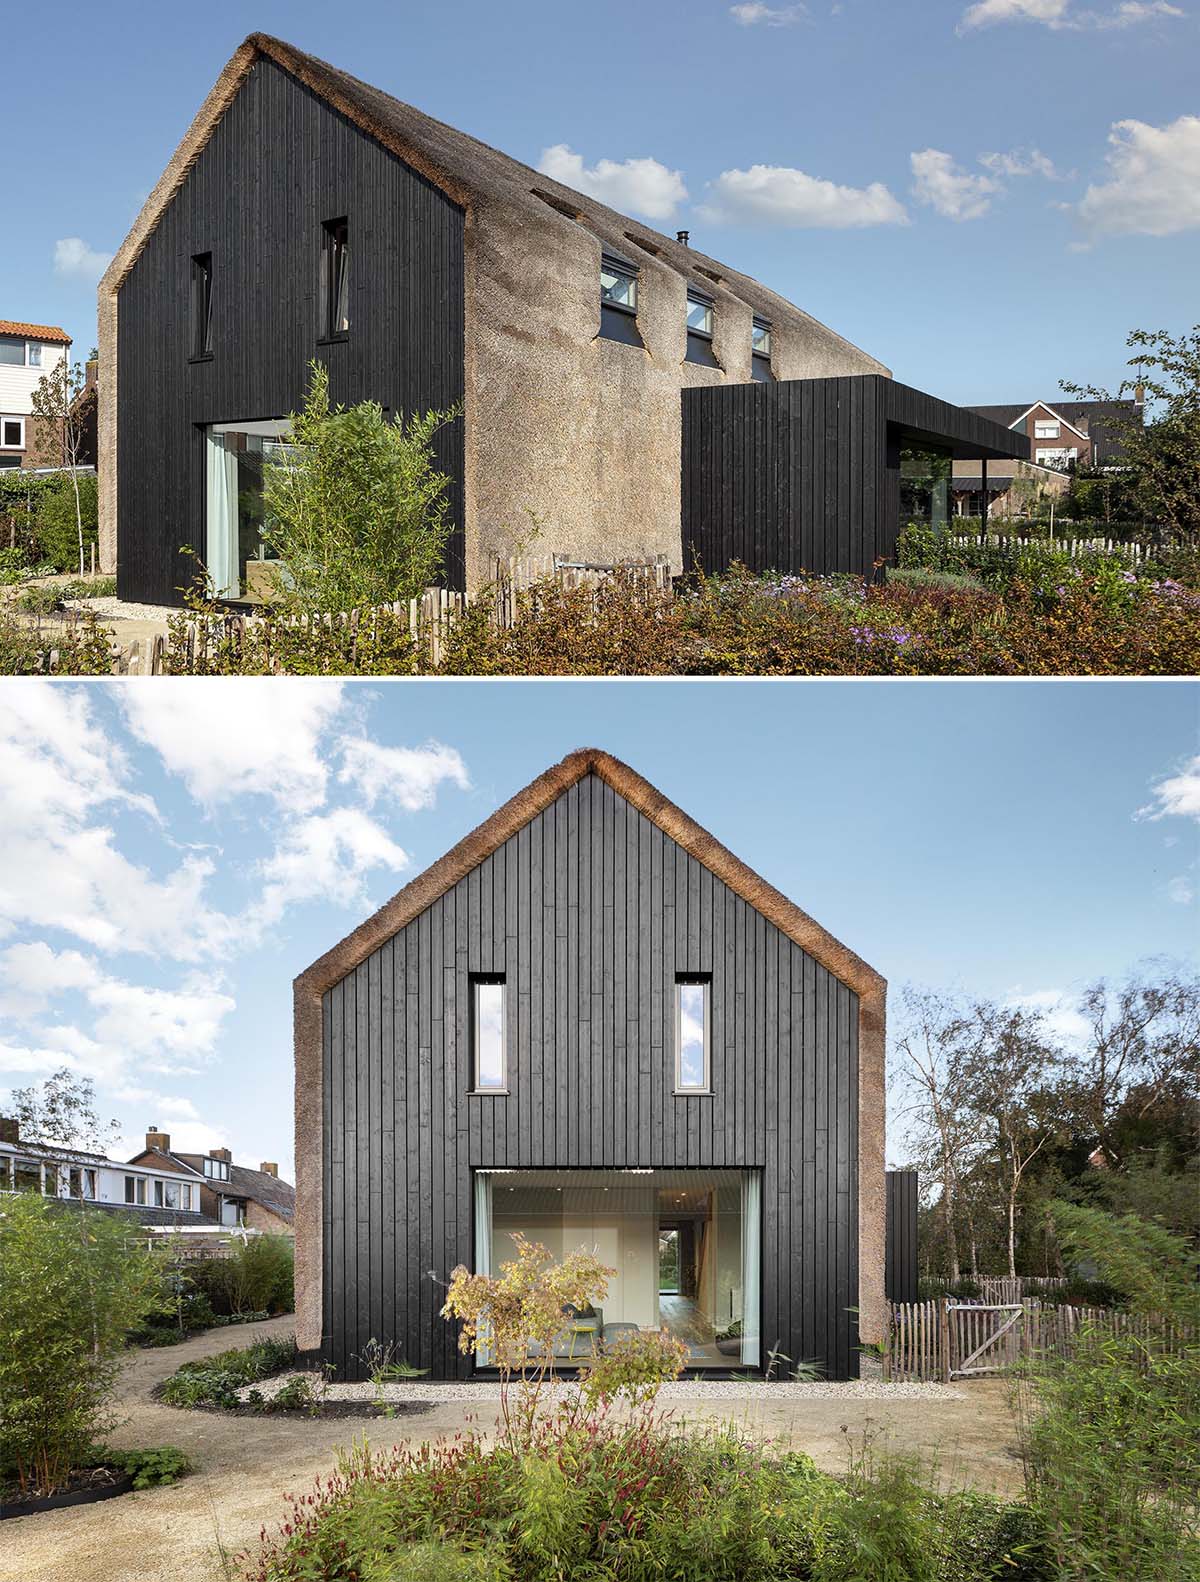 Снаружи этот современный дом покрыт соломой, которая спускается вертикально вниз с крыши и вдоль стен. Соломенная крыша контрастирует с деревом с черной отделкой.